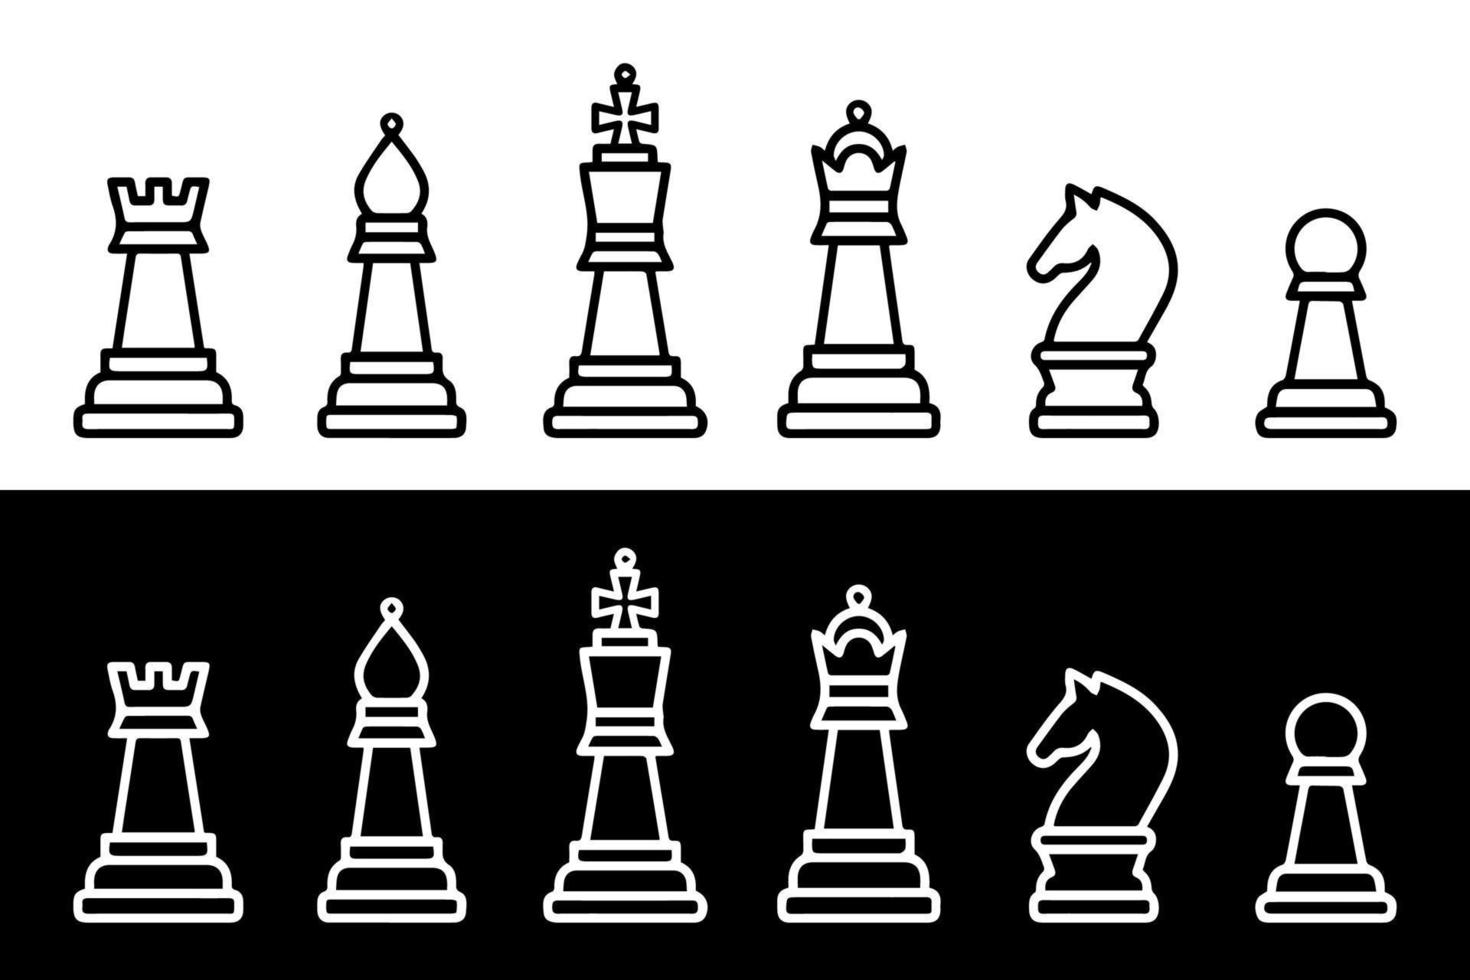 combinação de xadrez de vitória. peças clássicas brancas xeque-mate com  preto 11912869 Vetor no Vecteezy